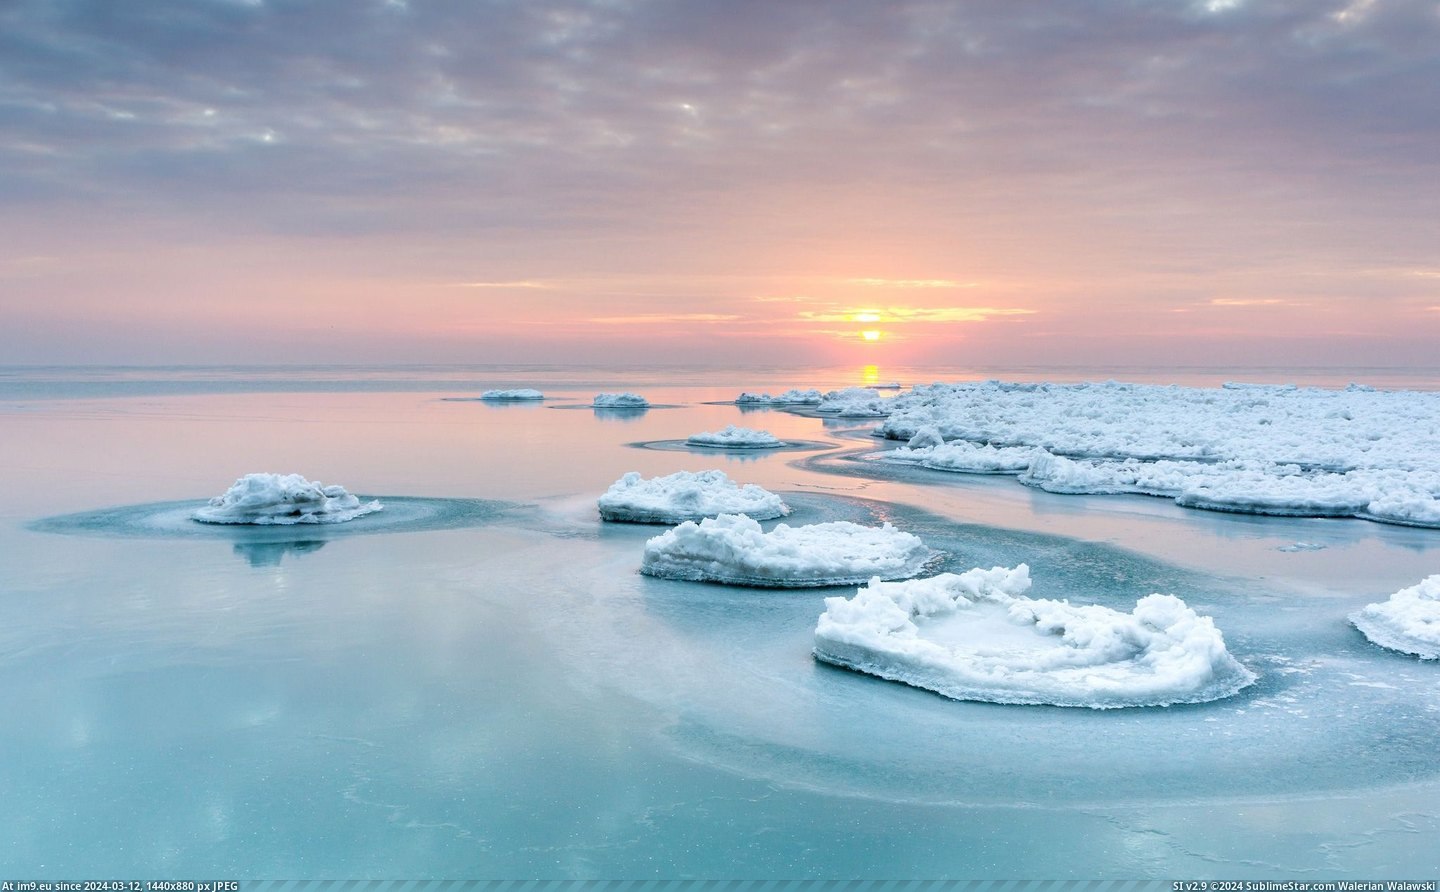 #Lake #Sunrise #Chicago #Frozen #Michigan [Earthporn] Sunrise on a frozen Lake Michigan, Chicago.  [2048x1263] Pic. (Bild von album My r/EARTHPORN favs))